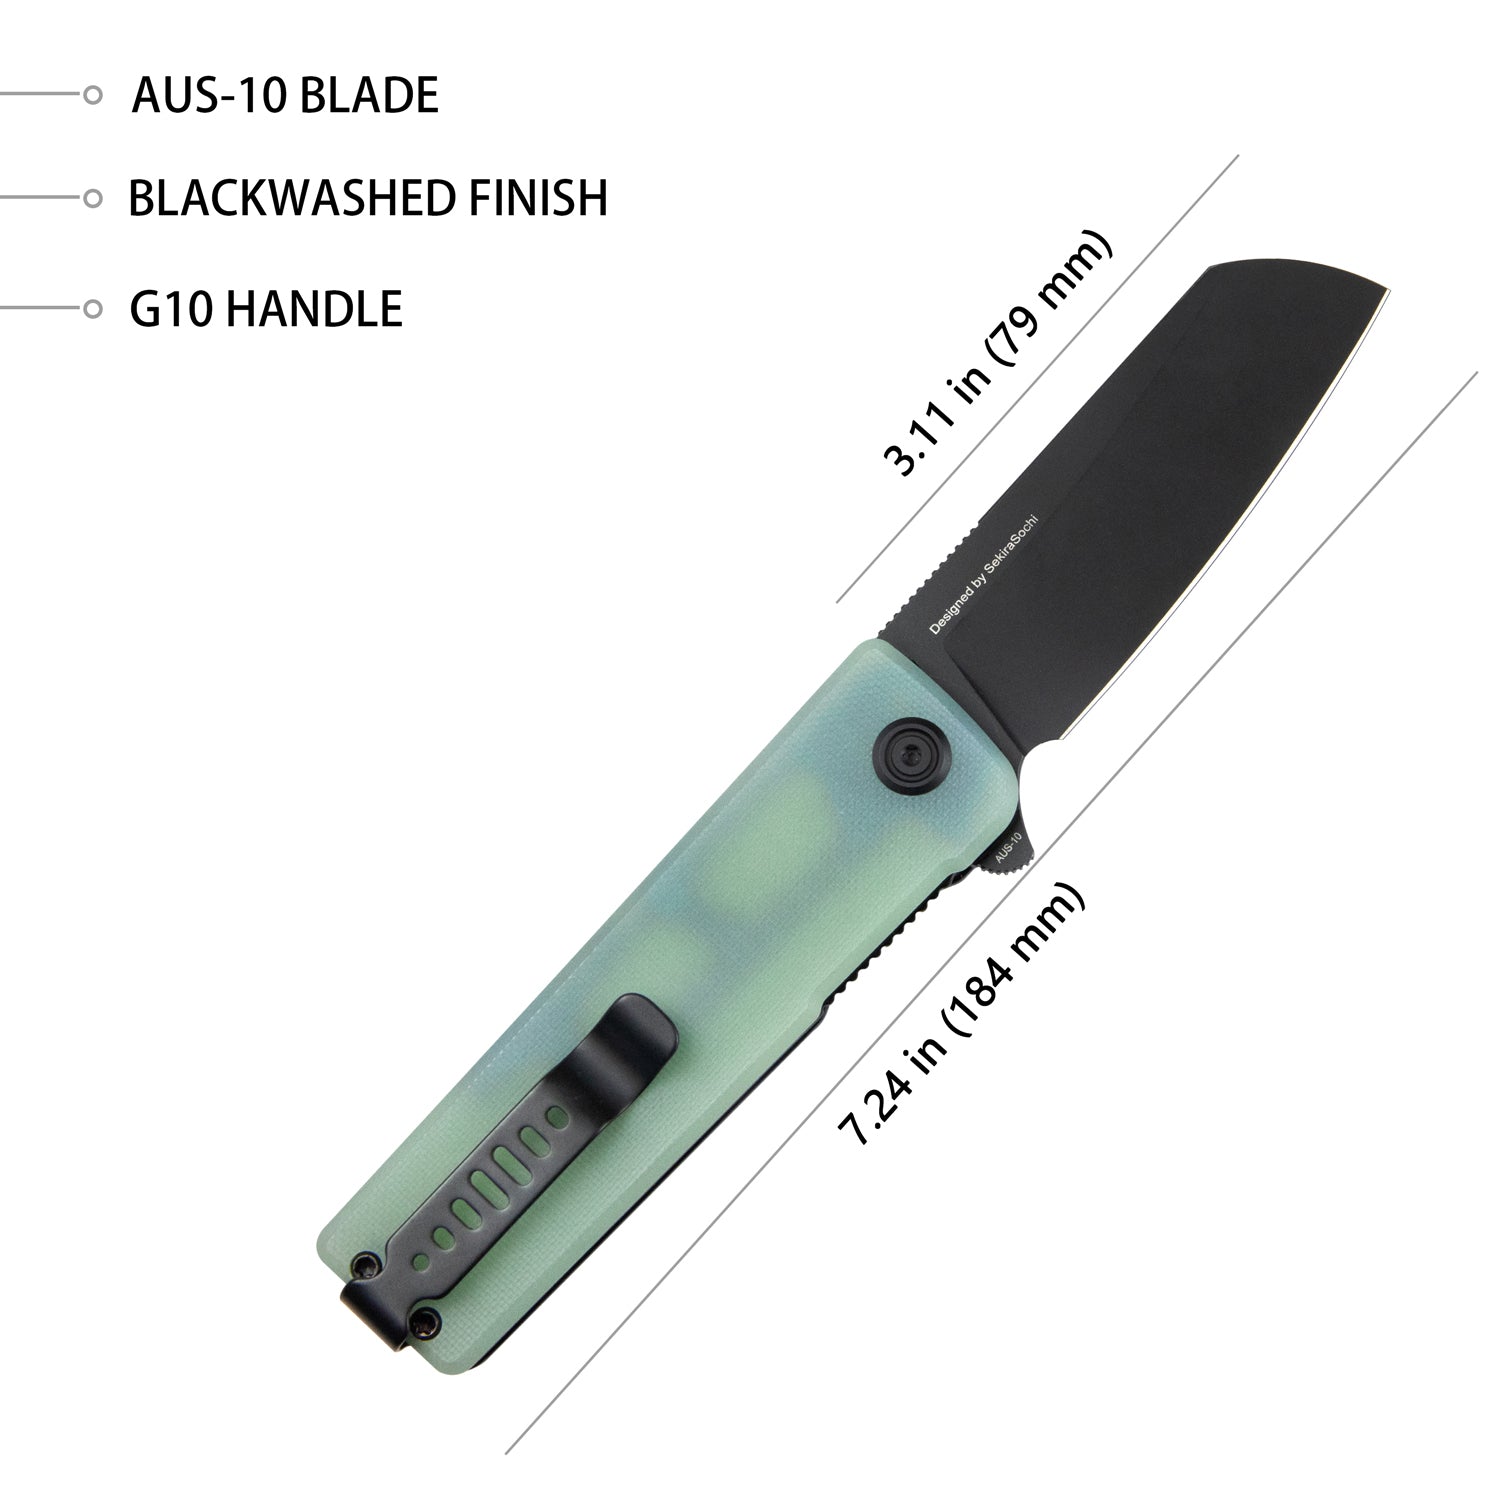 Kubey Sailor Klappmeseer Liner Lock Flipper Outdoor Pocket Knife Jade G10 Handle 3.11" Blackwashed AUS-10 Blade KU317D